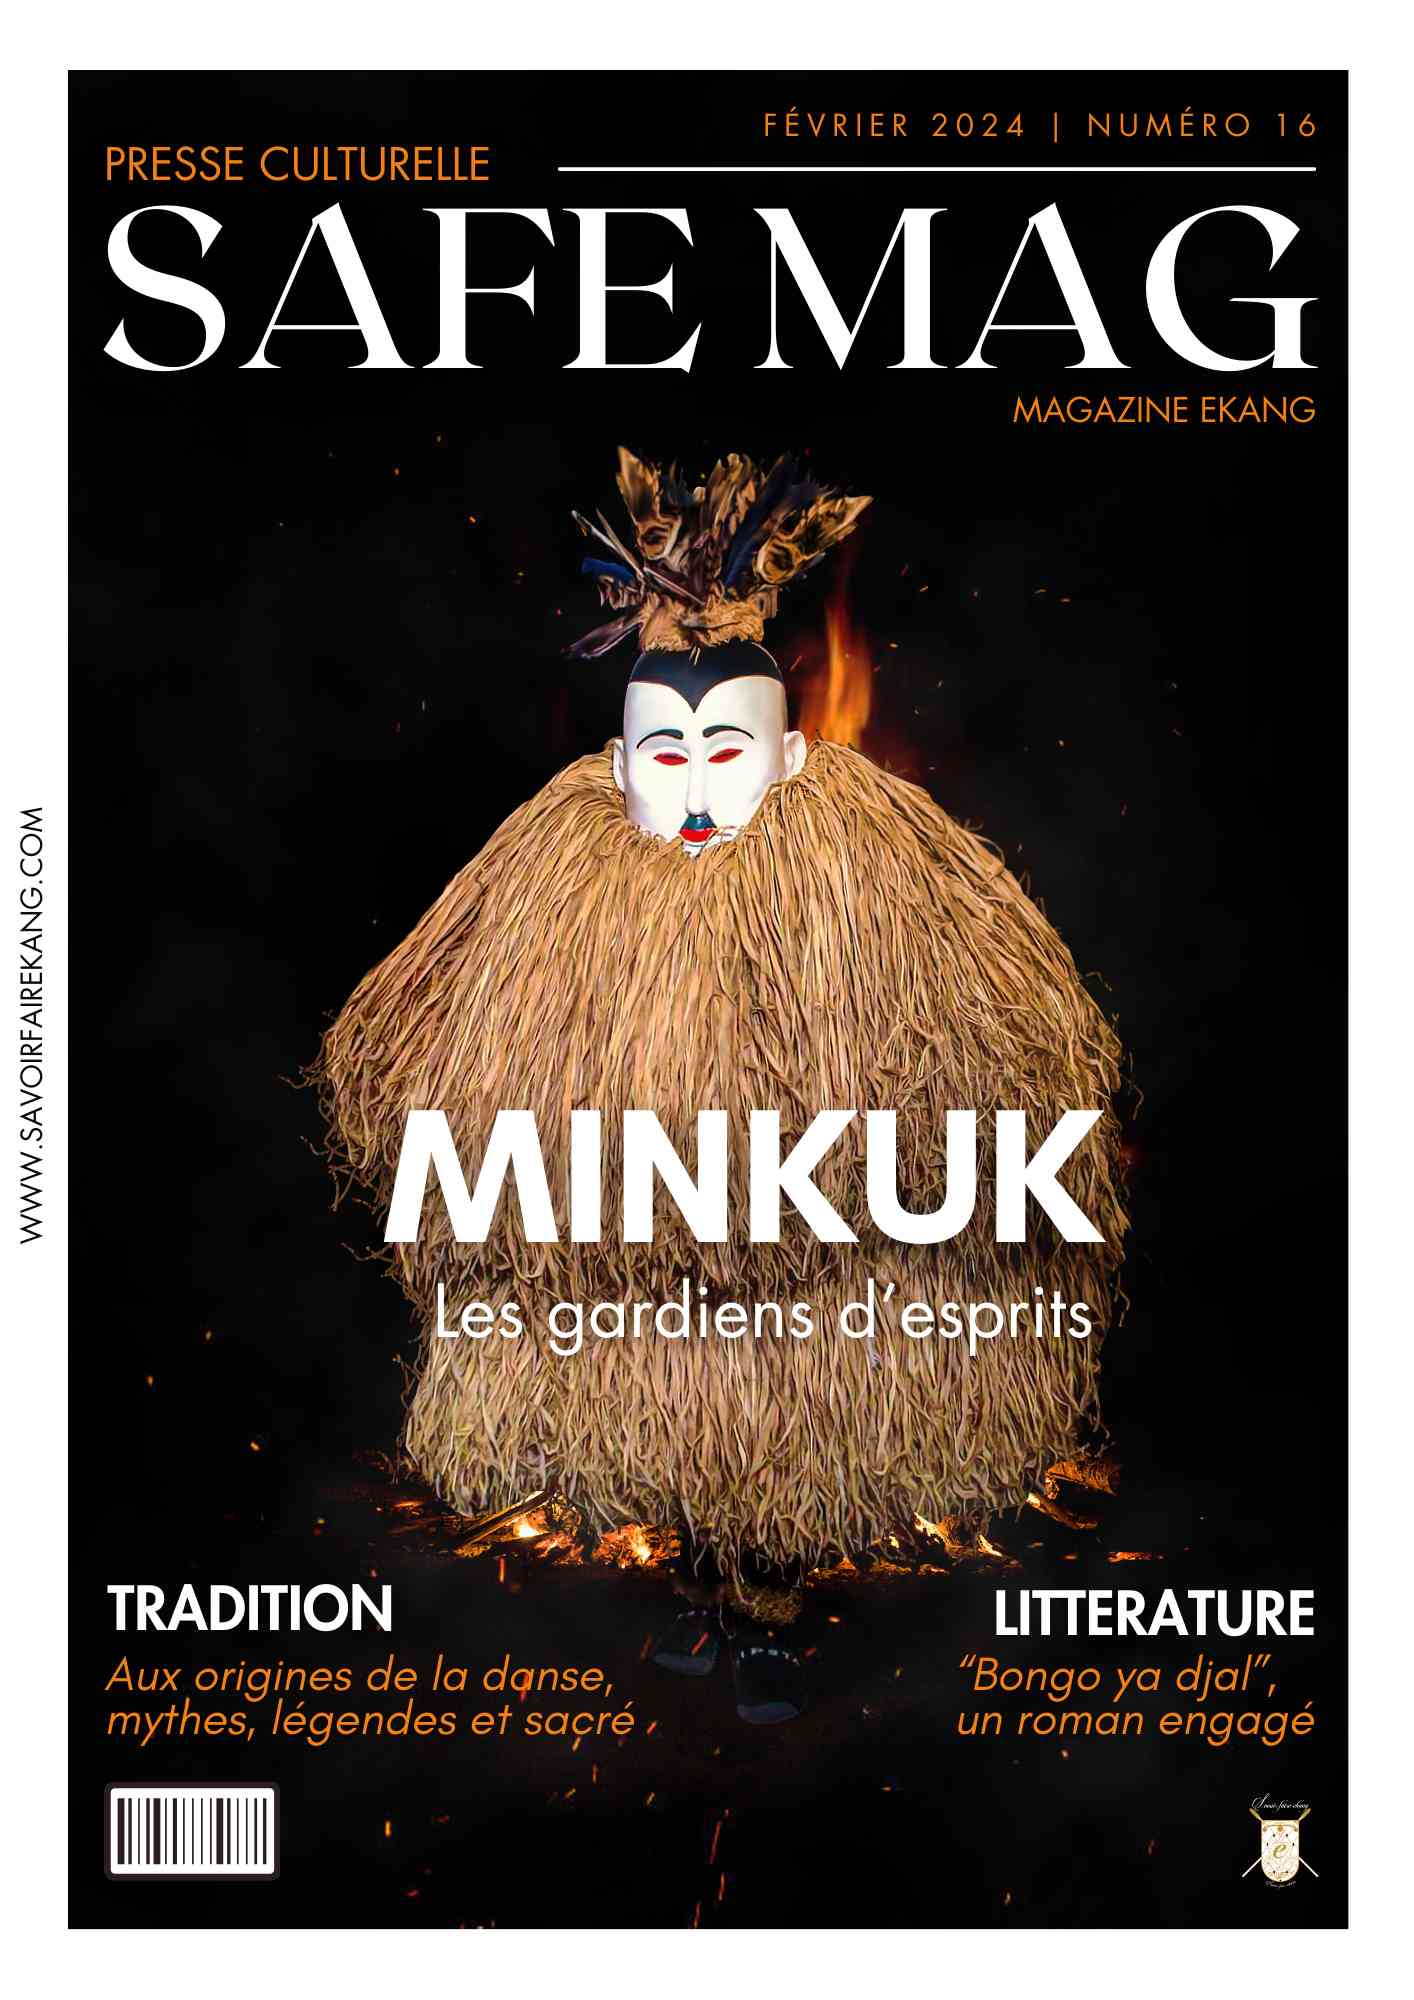 SAFE Magazine Numéro de Février 2024